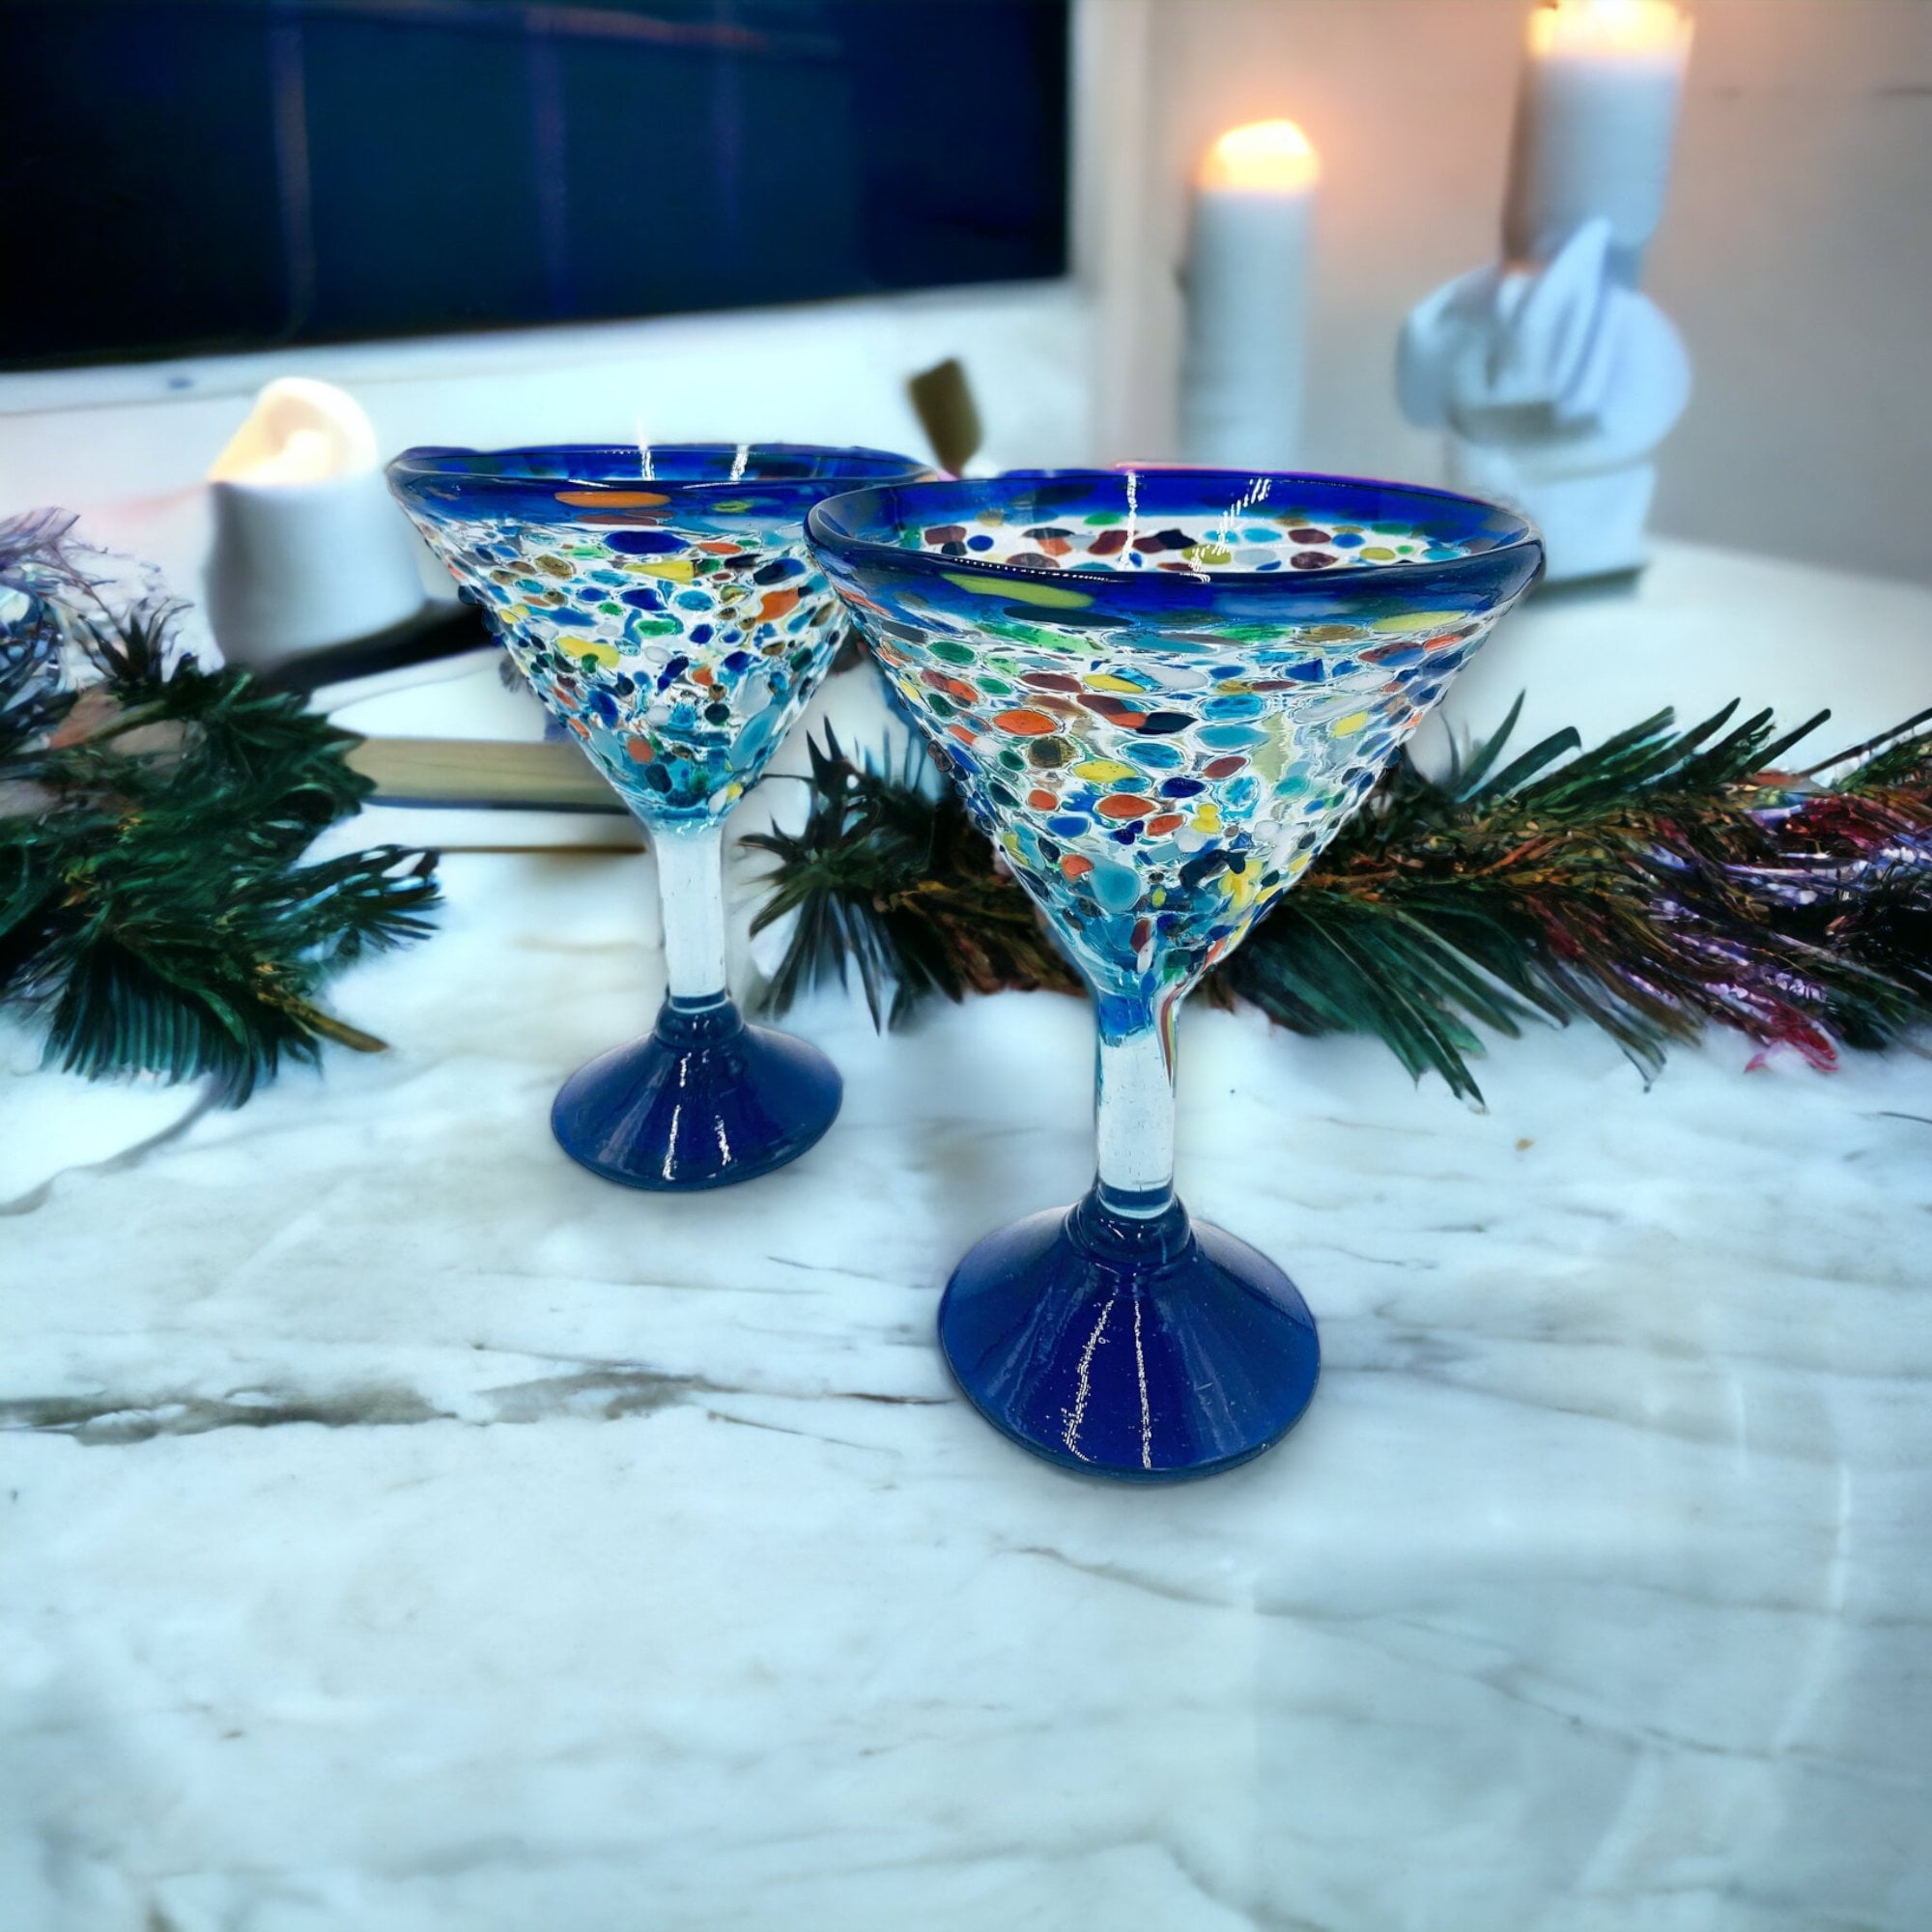 Vintage Set of 2 Blue Glass Short Stem Cocktail /Martini Glasses